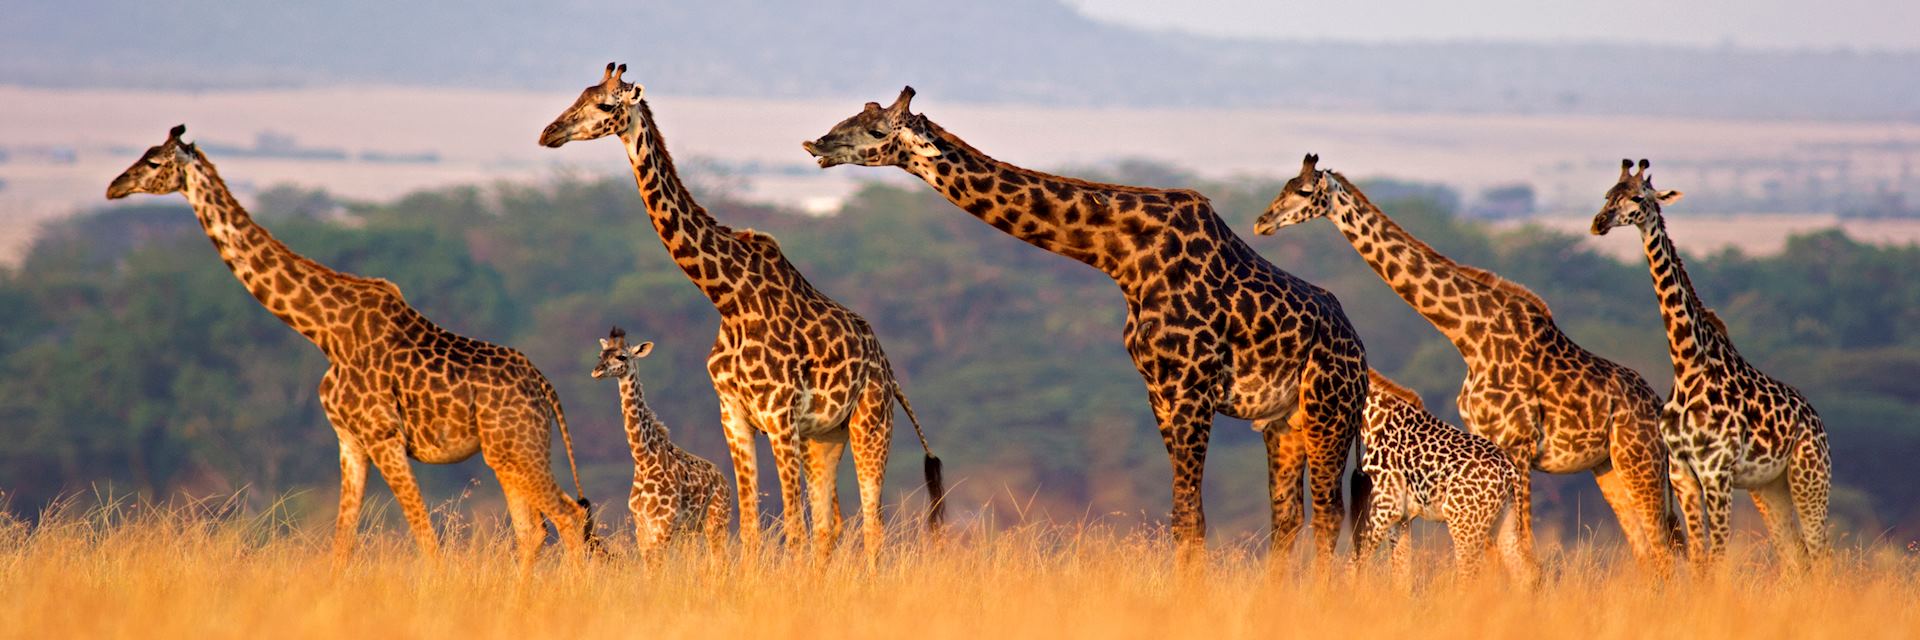 Giraffe in the Masai Mara, Kenya